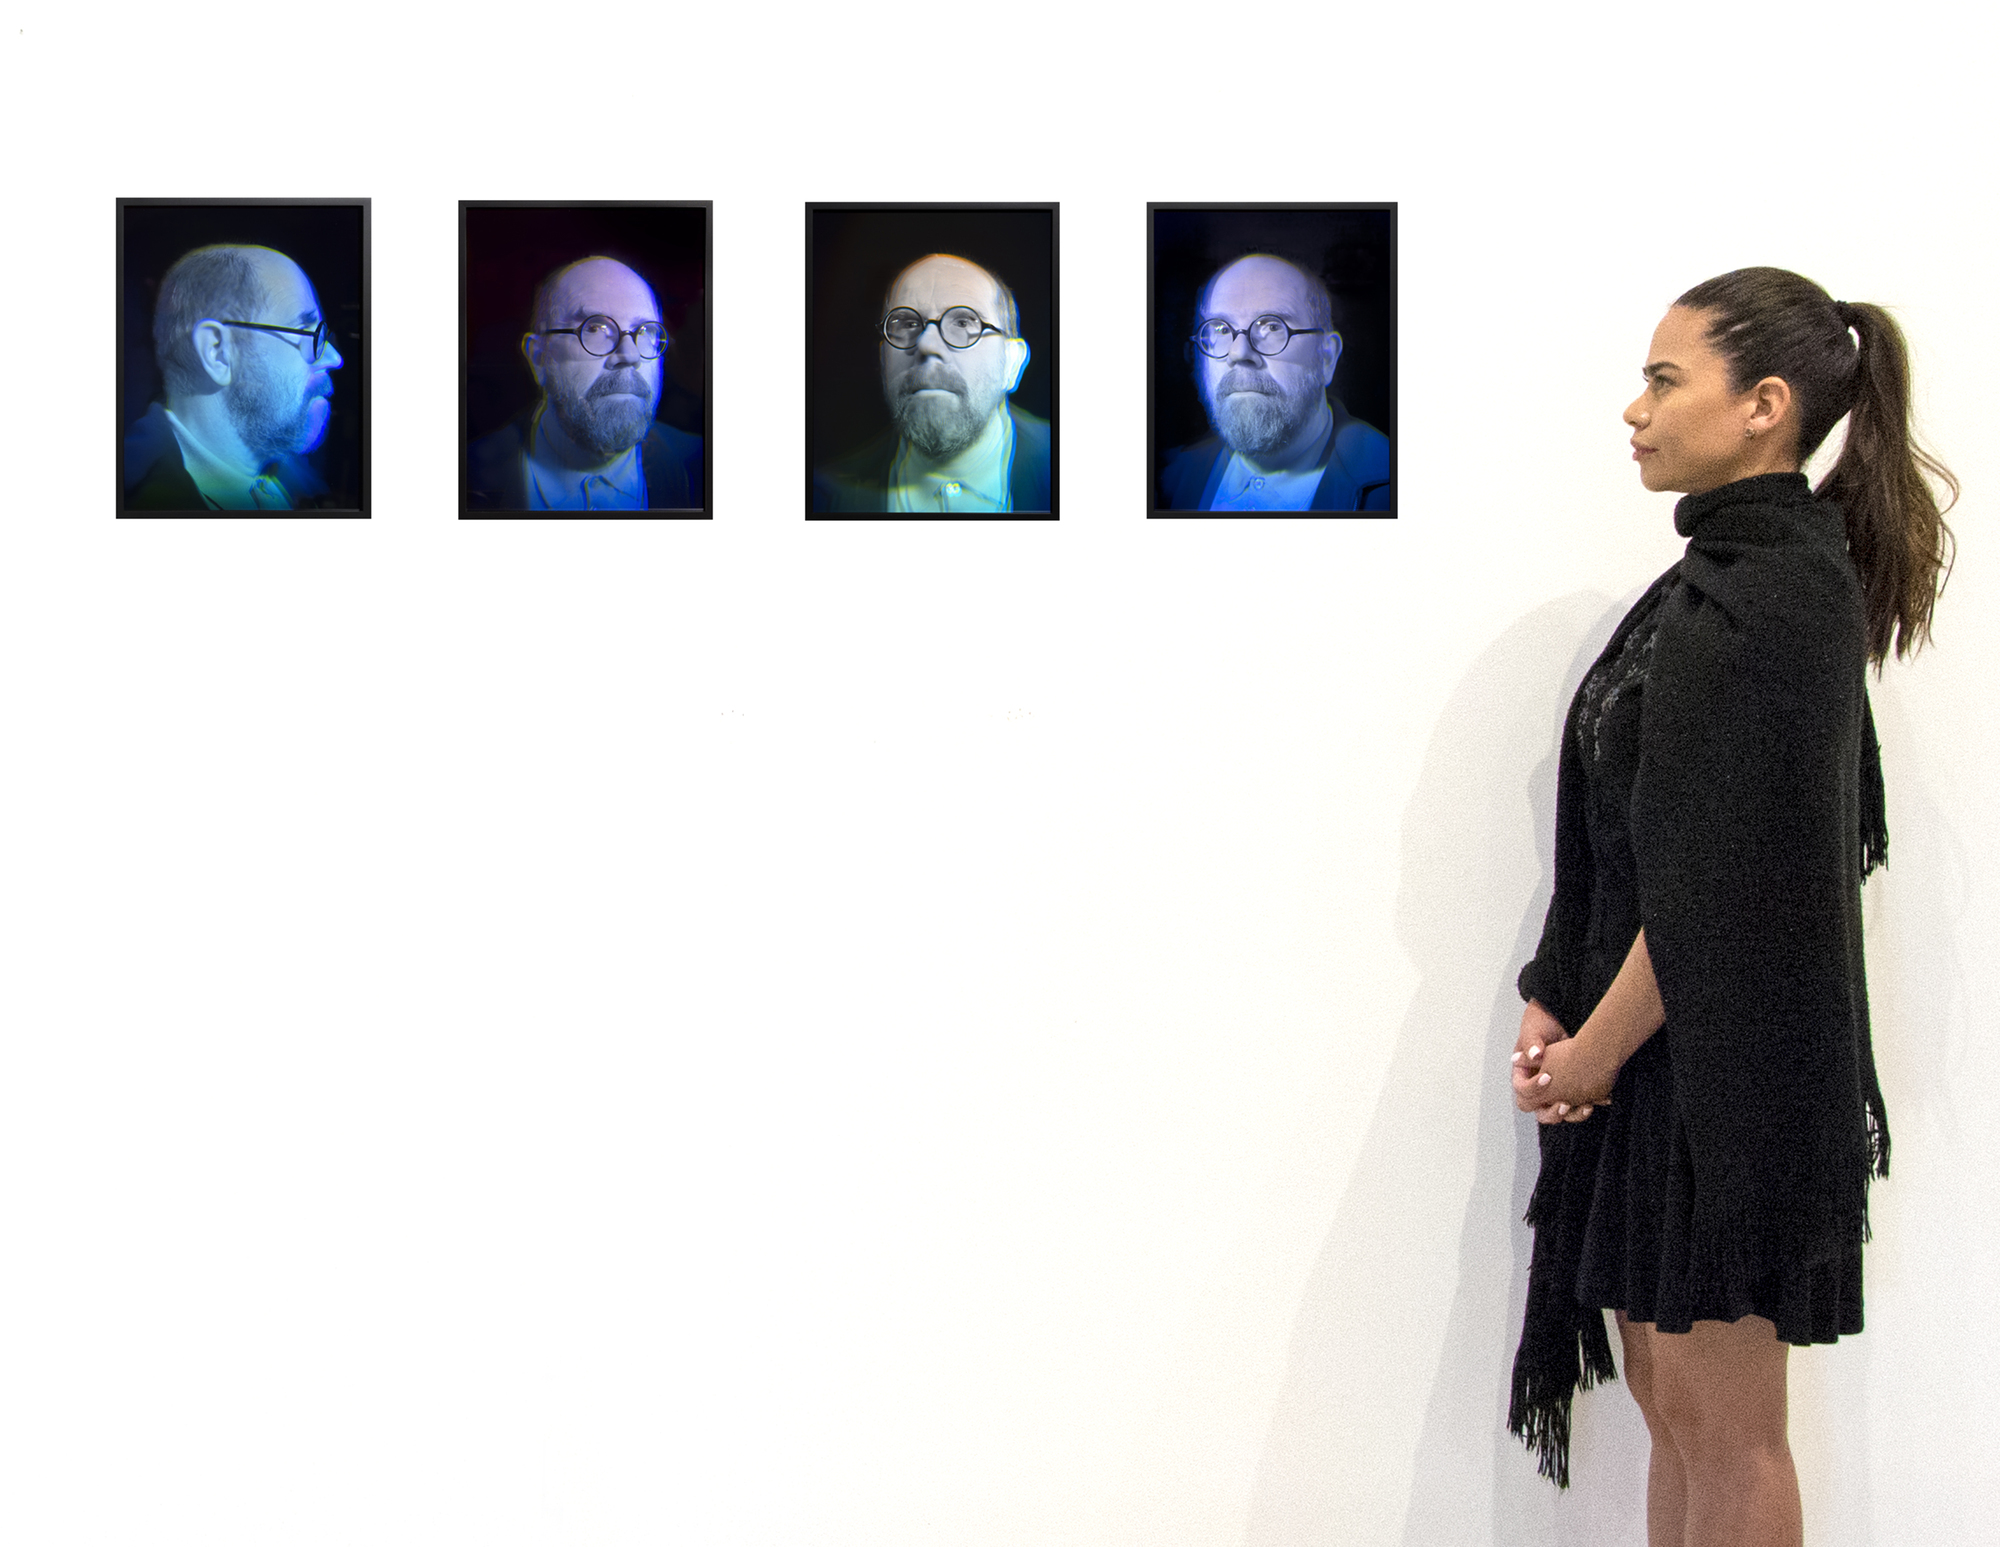 El conjunto de cuatro hologramas de cristal de Chuck Close representa una fascinante intersección de su permanente exploración del autorretrato y su interés por los medios artísticos innovadores. El autorretrato ha sido una piedra angular en la obra de Close, que le ha permitido profundizar en los entresijos de la identidad humana y el proceso de creación artística. Los hologramas cambian con la posición del espectador y crean una experiencia dinámica, como las obras pixeladas de Close, pero con una presencia física añadida. Holography demuestra el compromiso del artista con la evolución de su lenguaje artístico, combinando hábilmente el retrato tradicional con los avances tecnológicos modernos para desafiar y redefinir continuamente los límites de la representación visual.